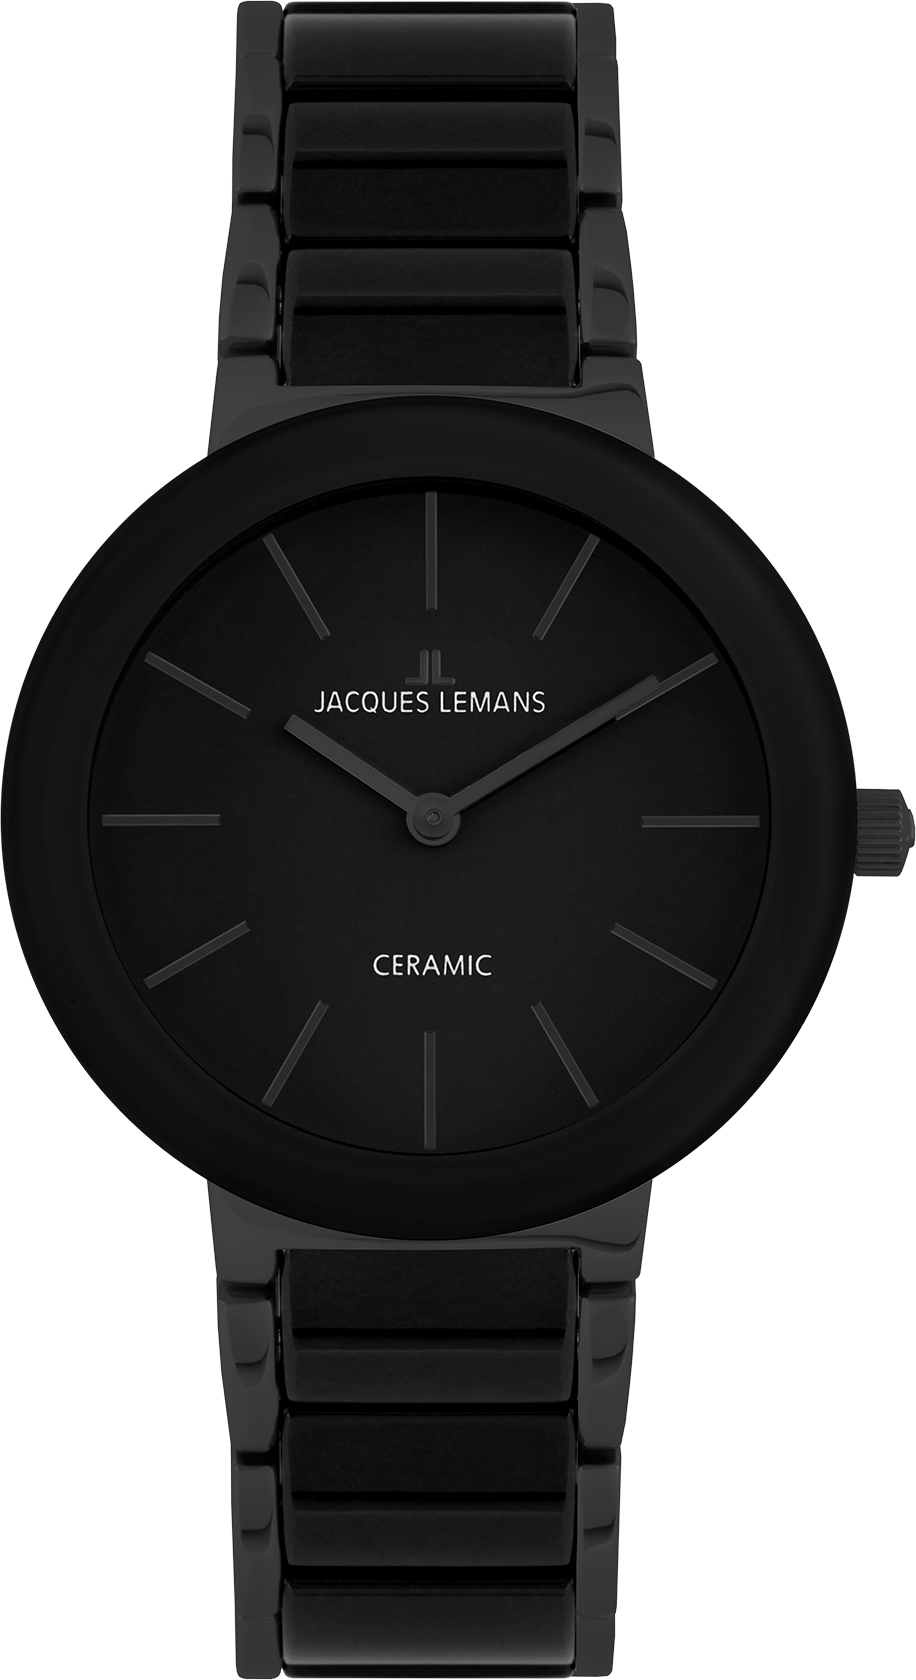 | Monaco Lemans® 42-8G Jacques